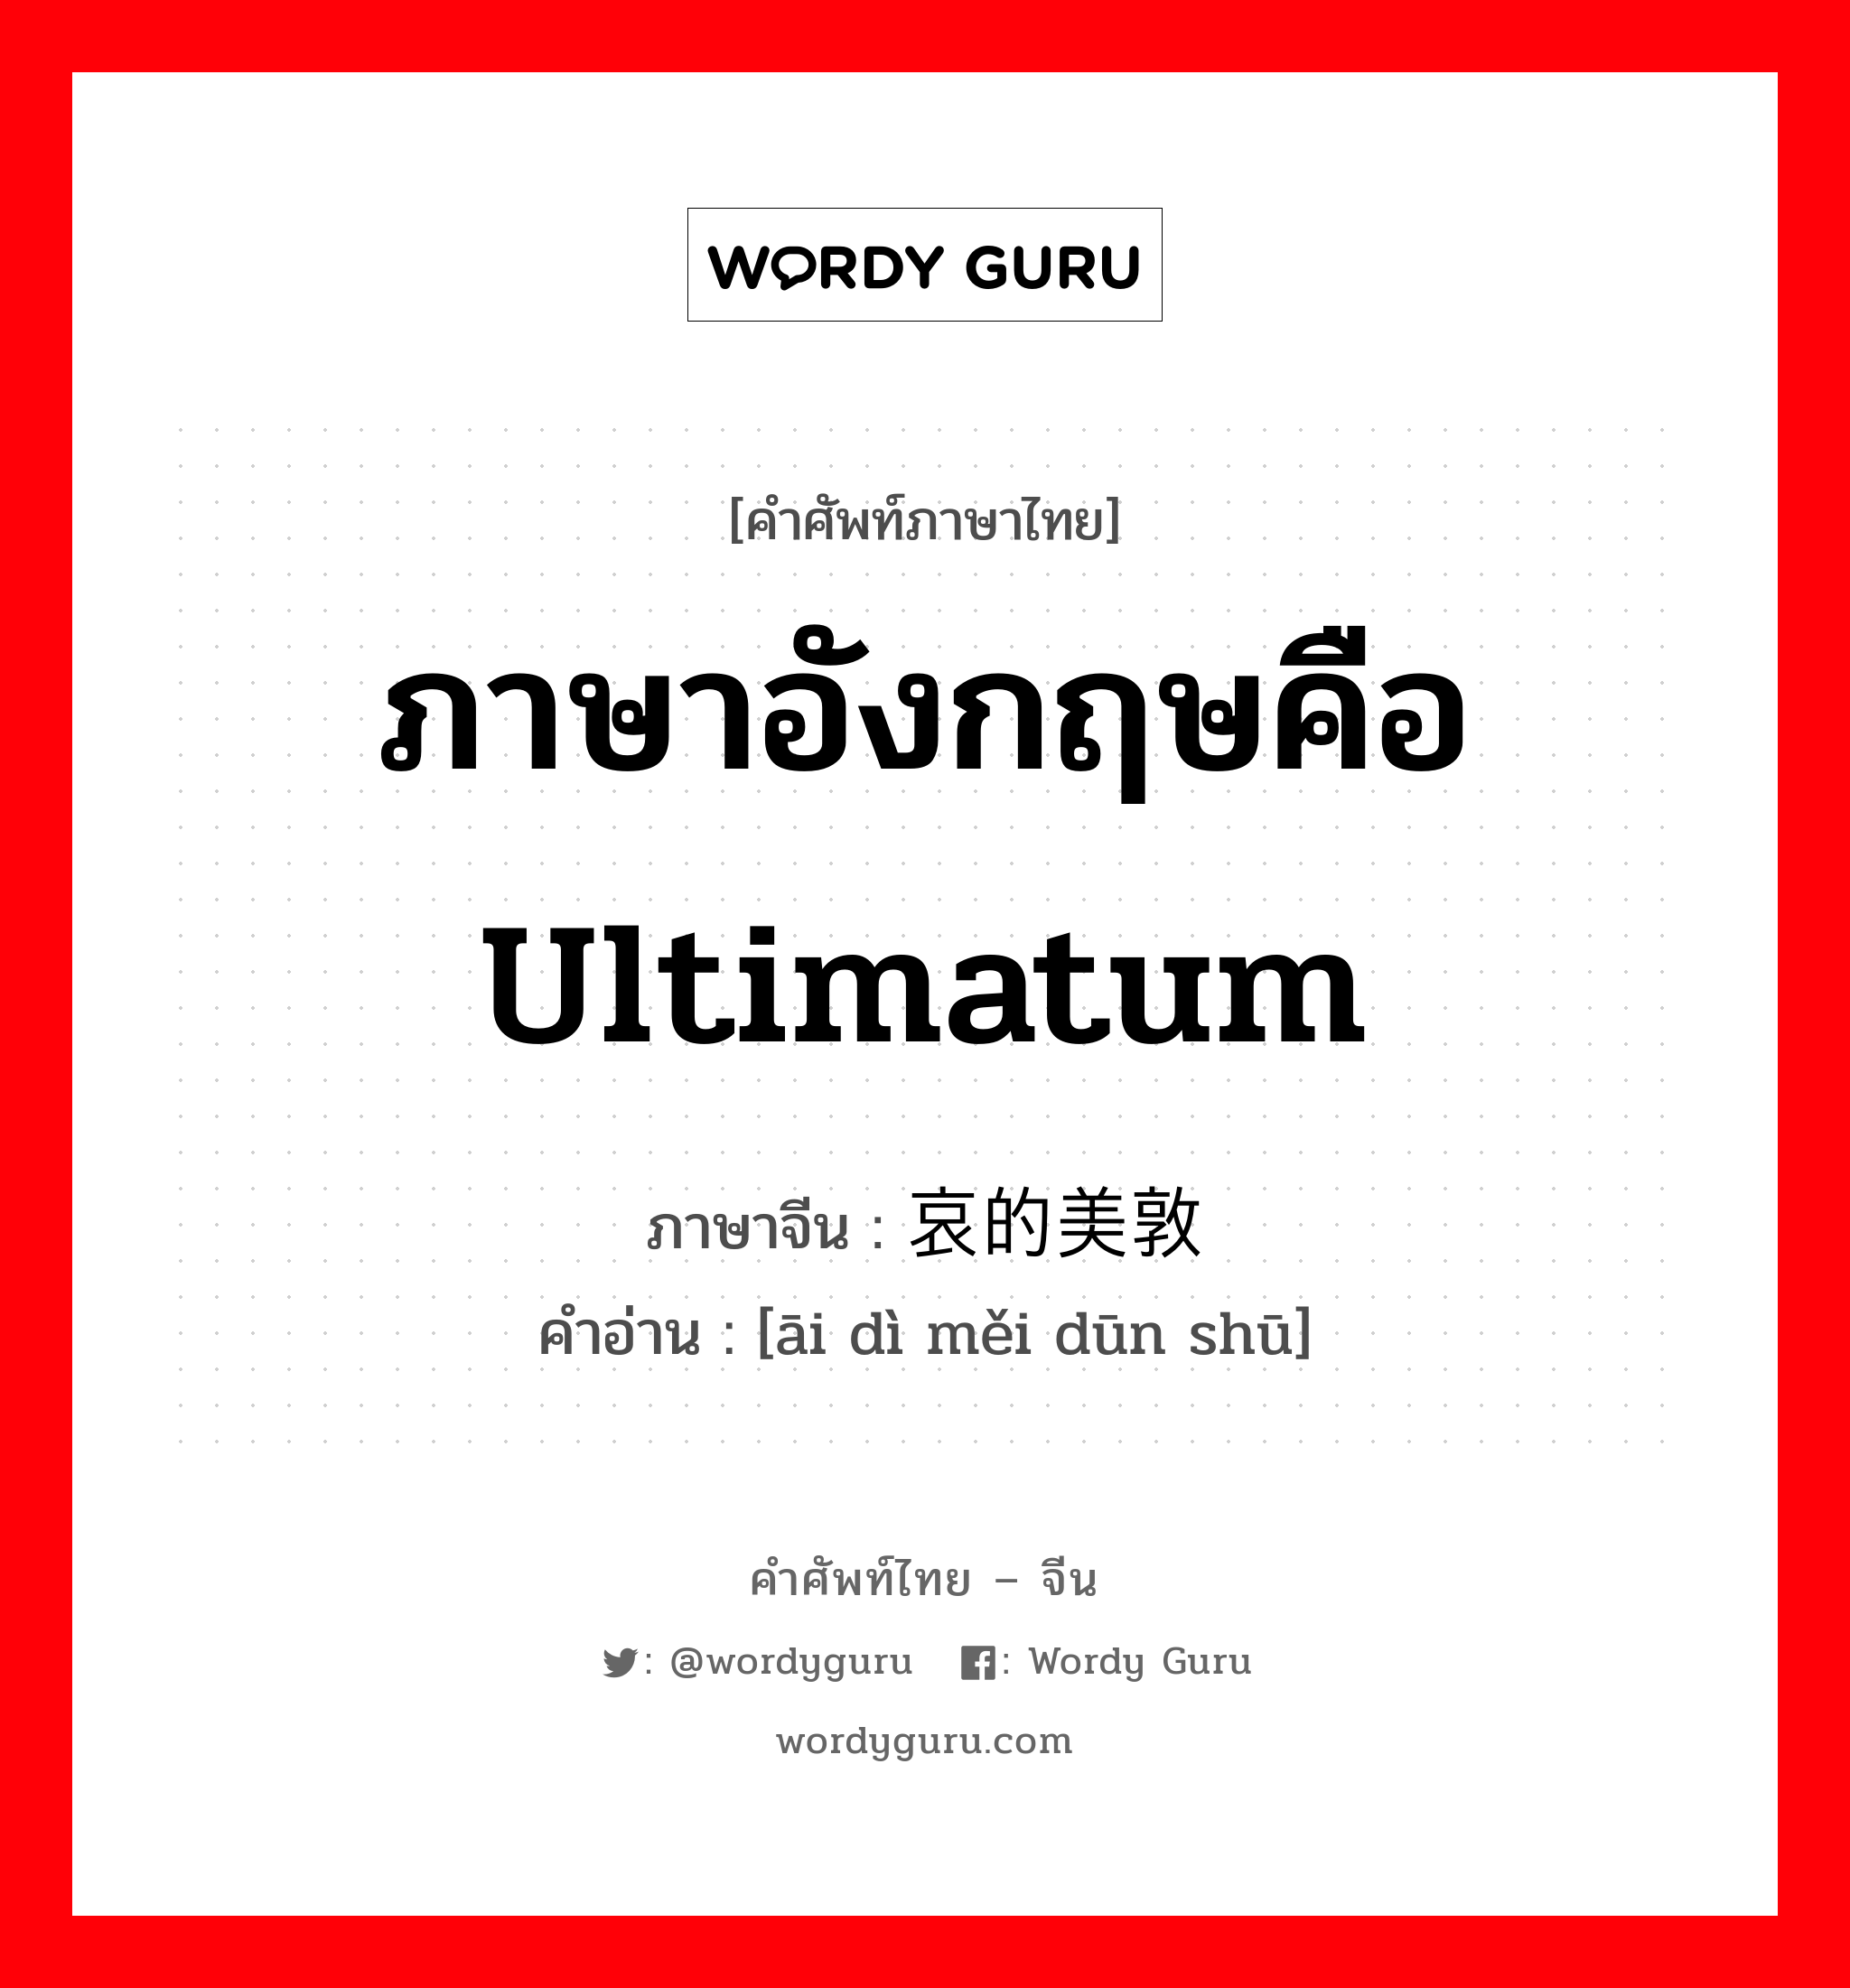 ภาษาอังกฤษคือ ultimatum ภาษาจีนคืออะไร, คำศัพท์ภาษาไทย - จีน ภาษาอังกฤษคือ ultimatum ภาษาจีน 哀的美敦书 คำอ่าน [āi dì měi dūn shū]